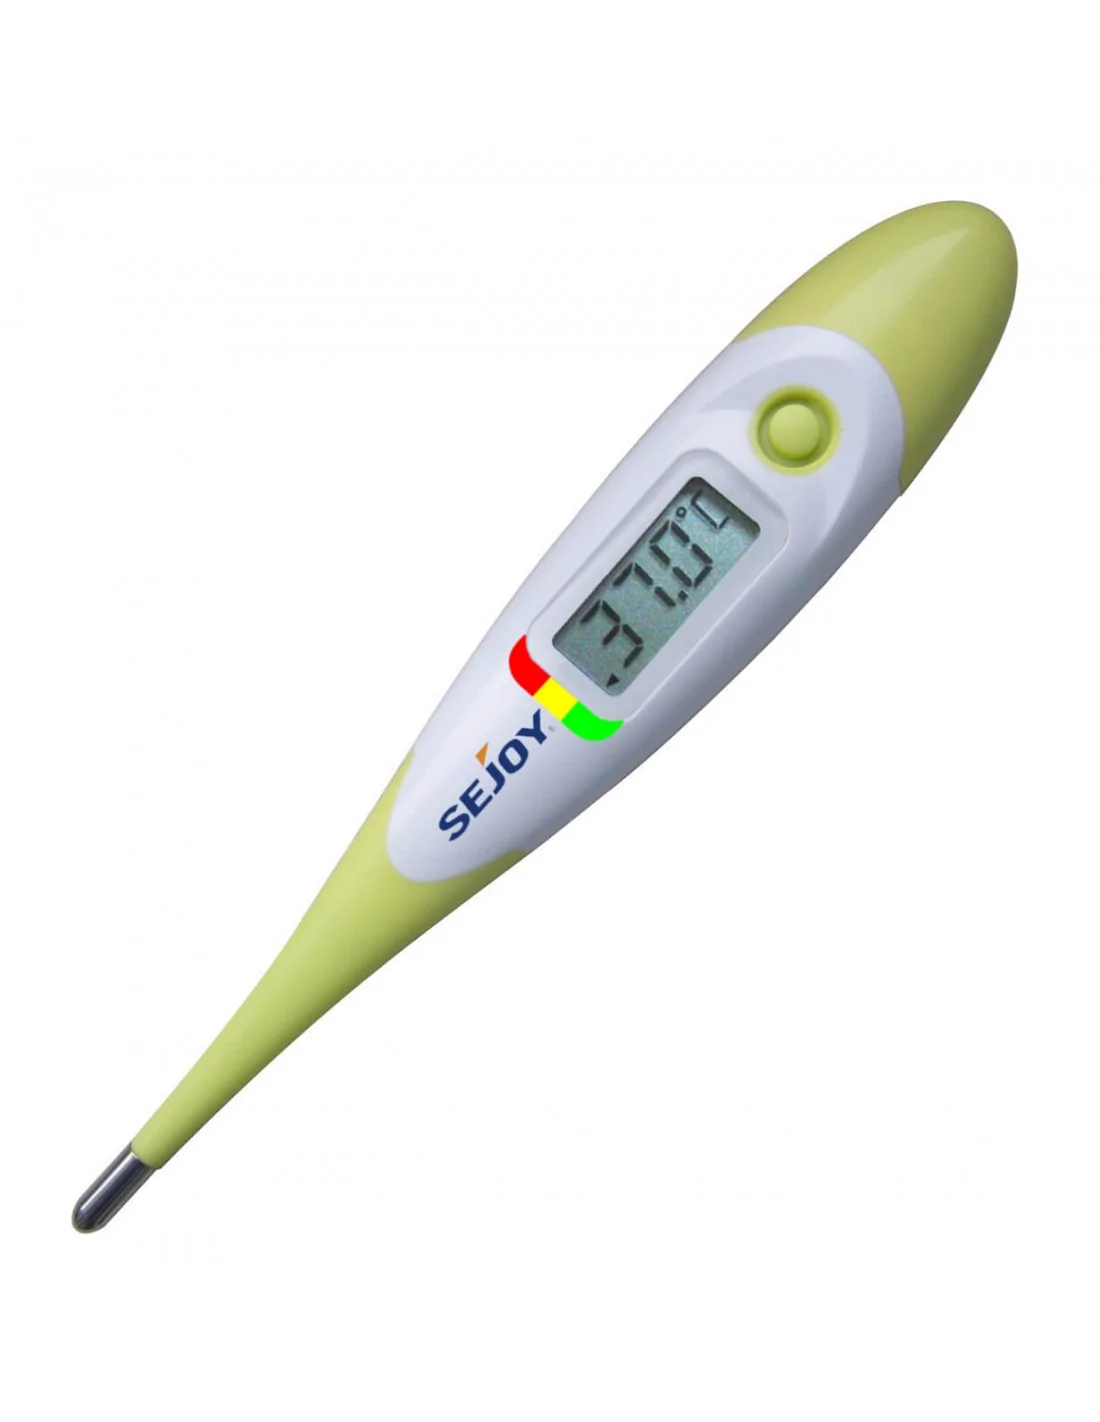 Thermomètre digital bébé à embout souple Thermobip